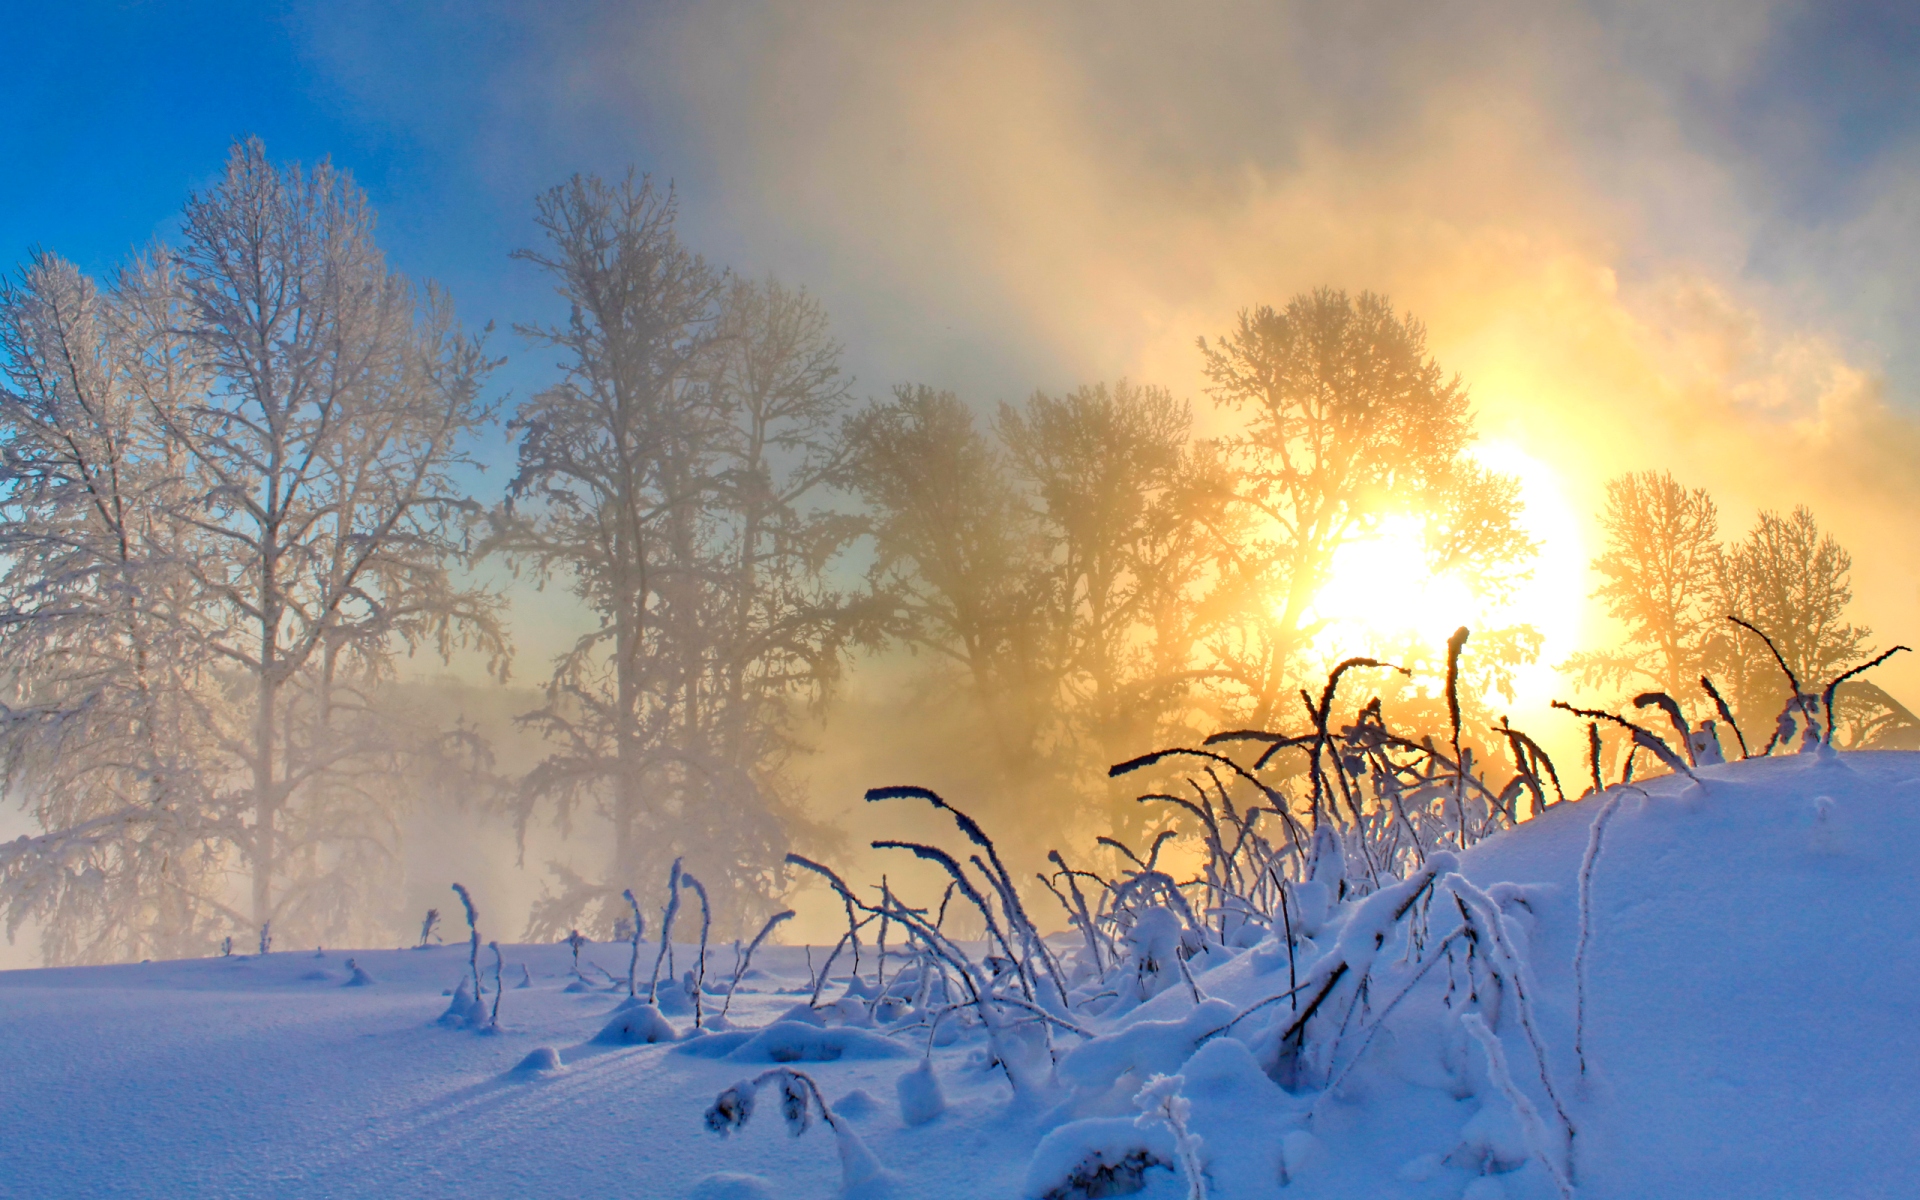 Картинка Туманное, морозное утро » Зима картинки скачать бесплатно (289  фото) - Картинки 24 » Картинки 24 - скачать картинки бесплатно